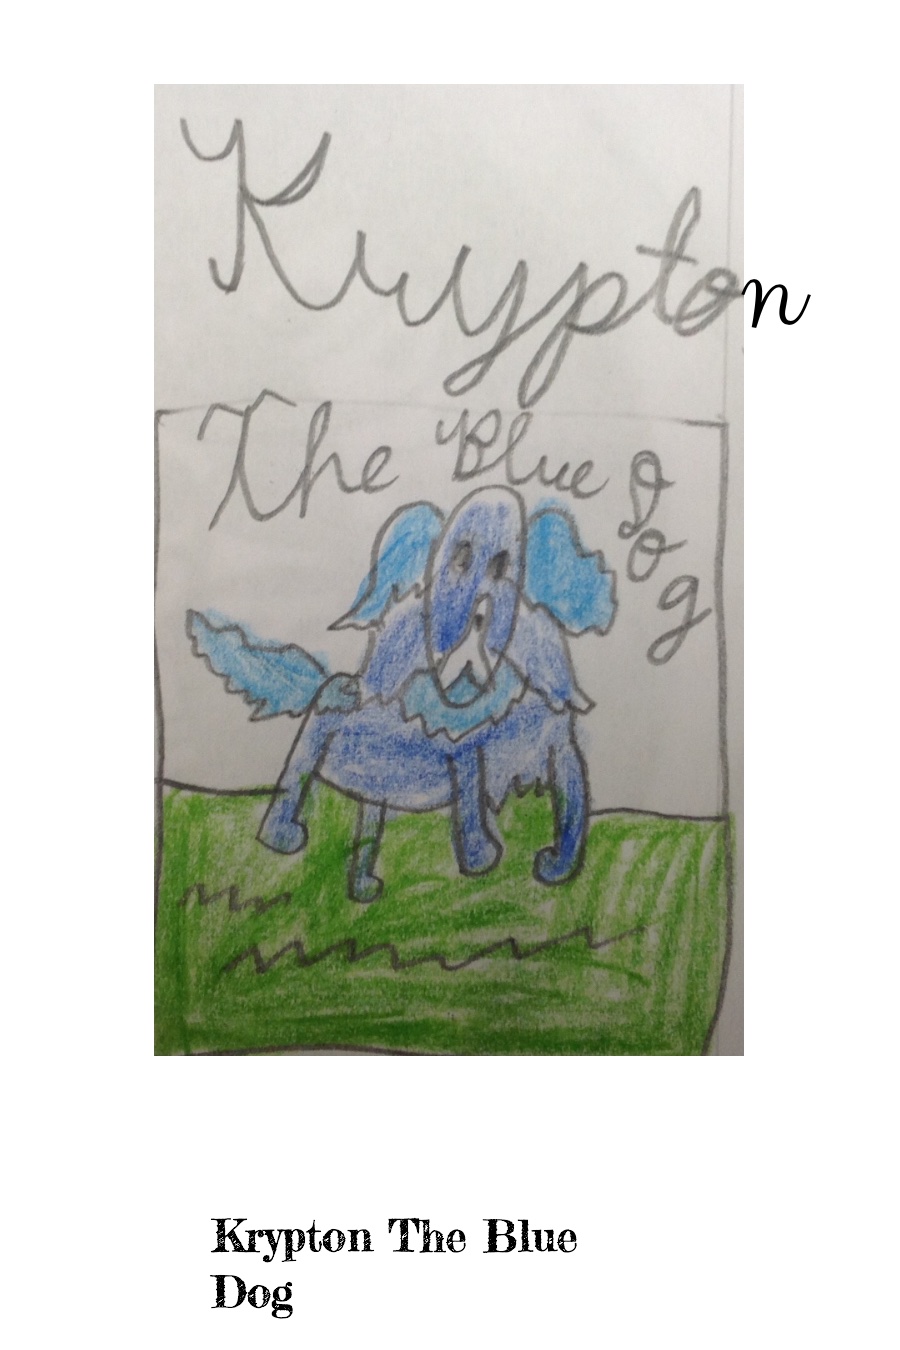 Krypton The Blue Dog by Akshaj R